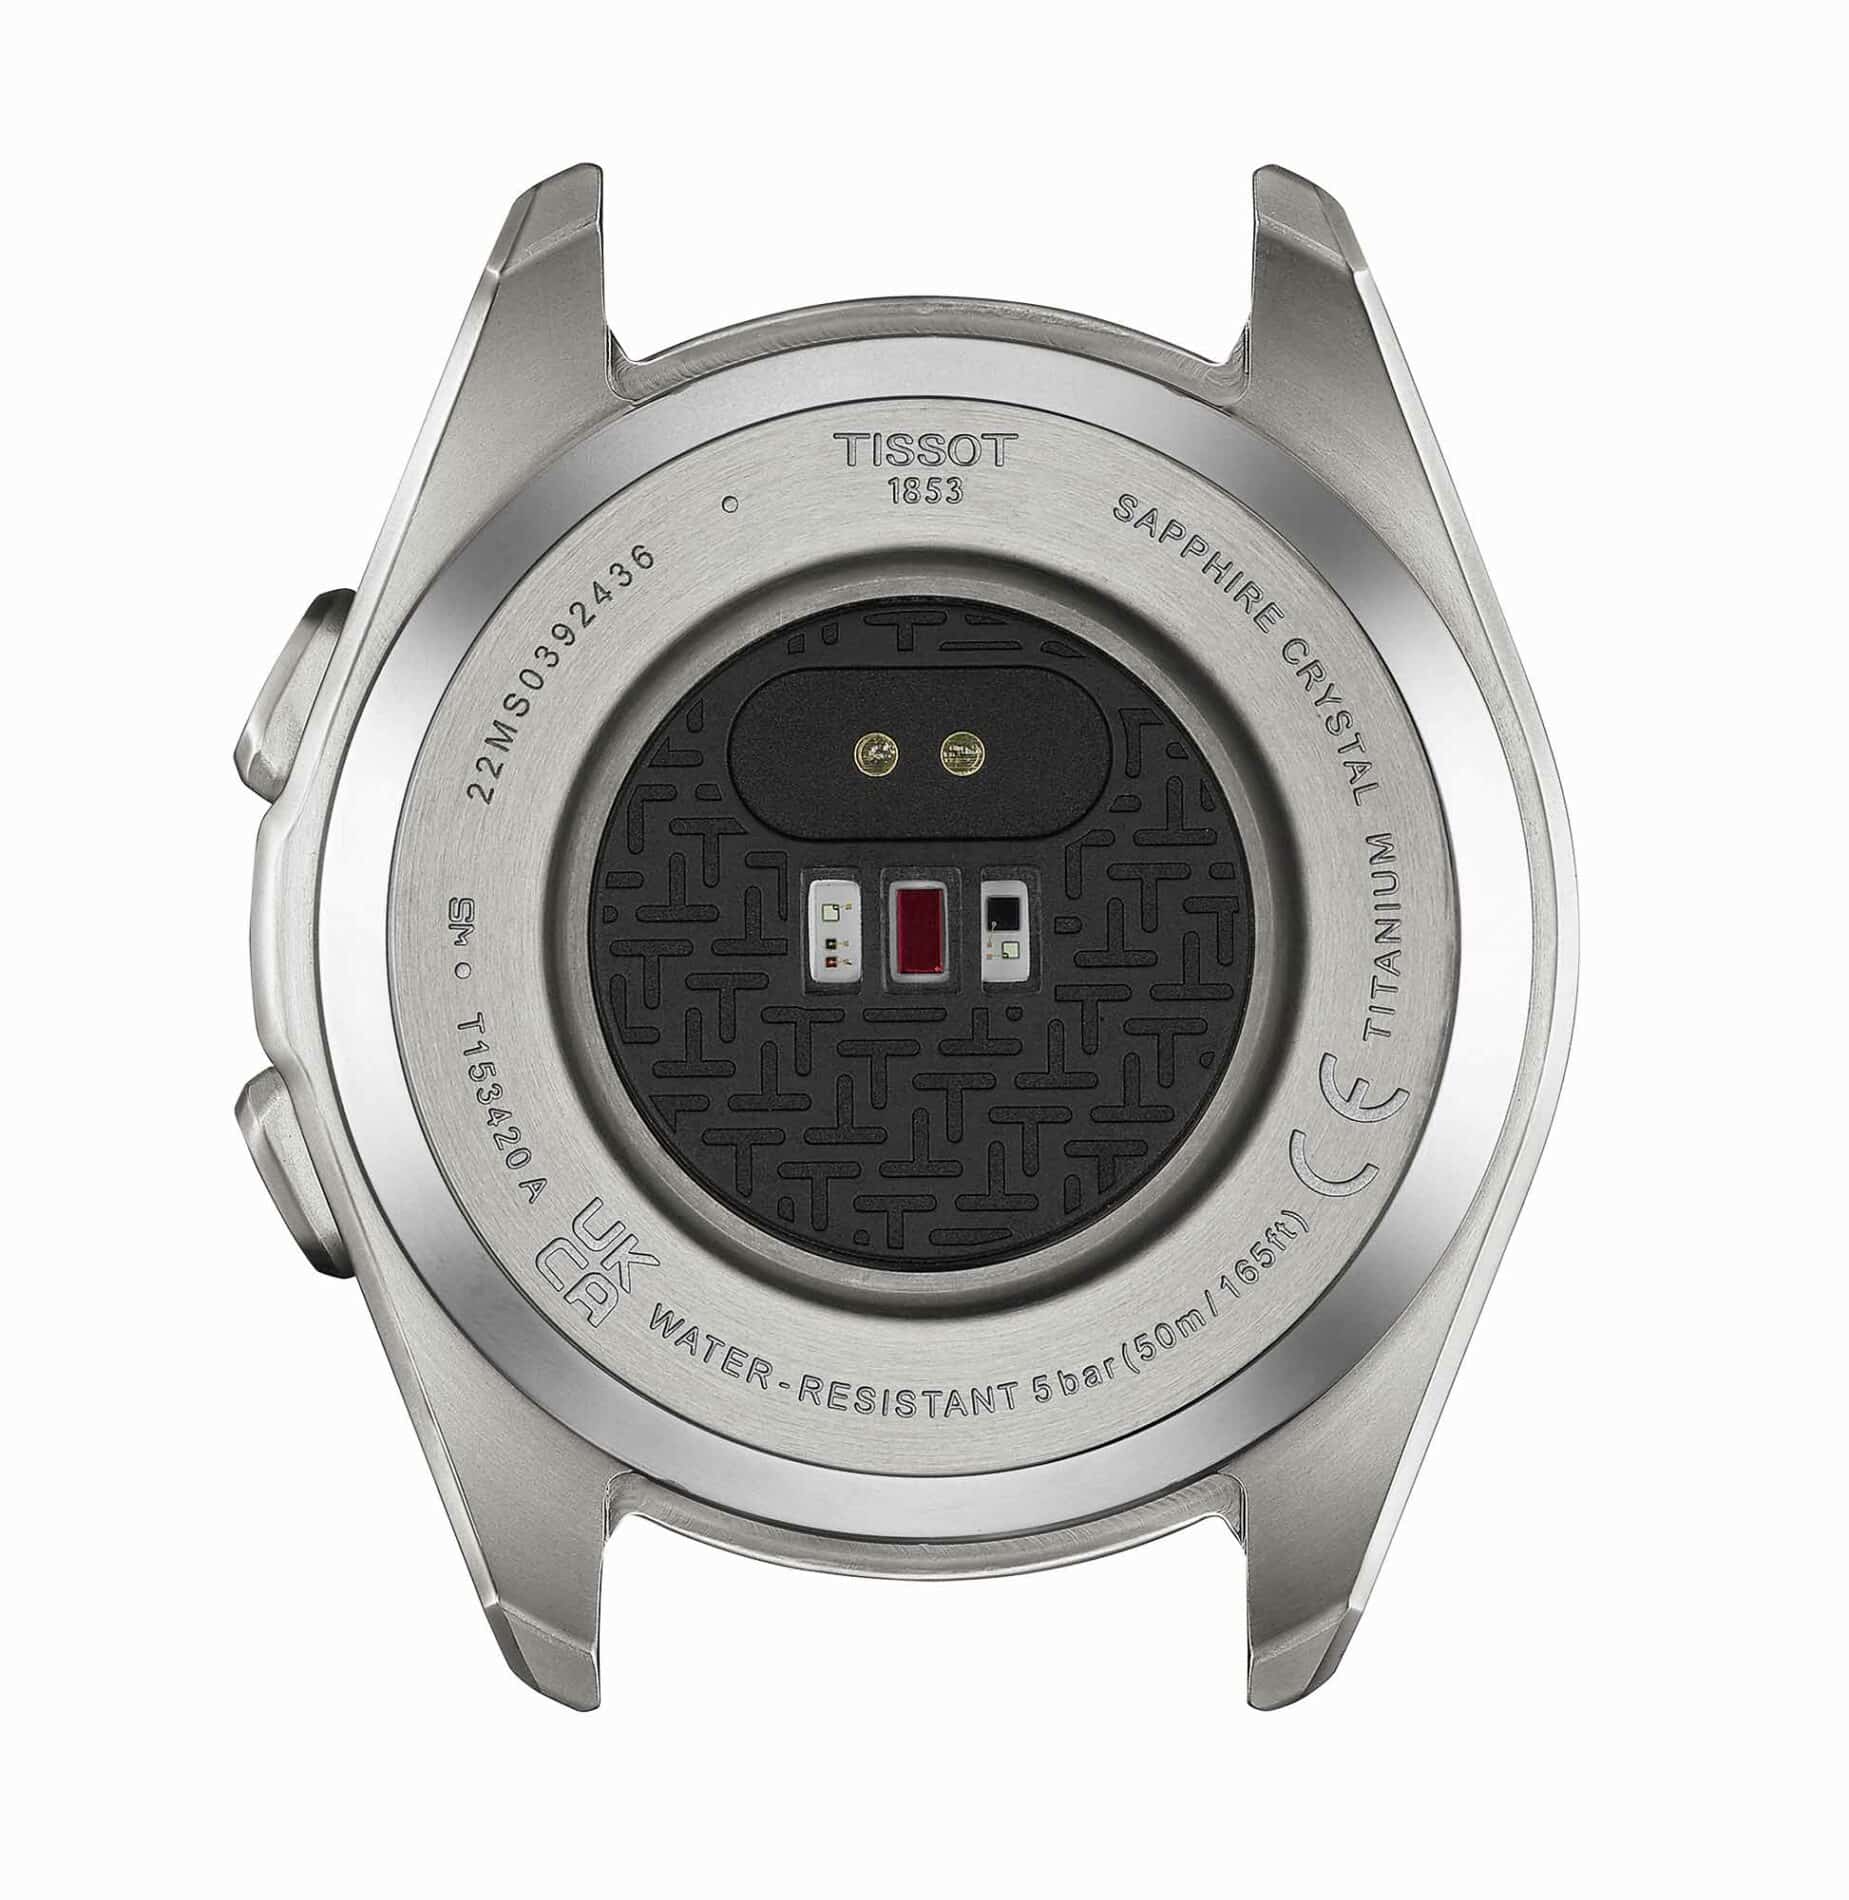 Tissot T-Touch Connect Sport T153.420.44.051.00 - Gioielleria Casavola di Noci - orologio svizzero smartwatch ibrido con cassa in titanio e sensore cardio